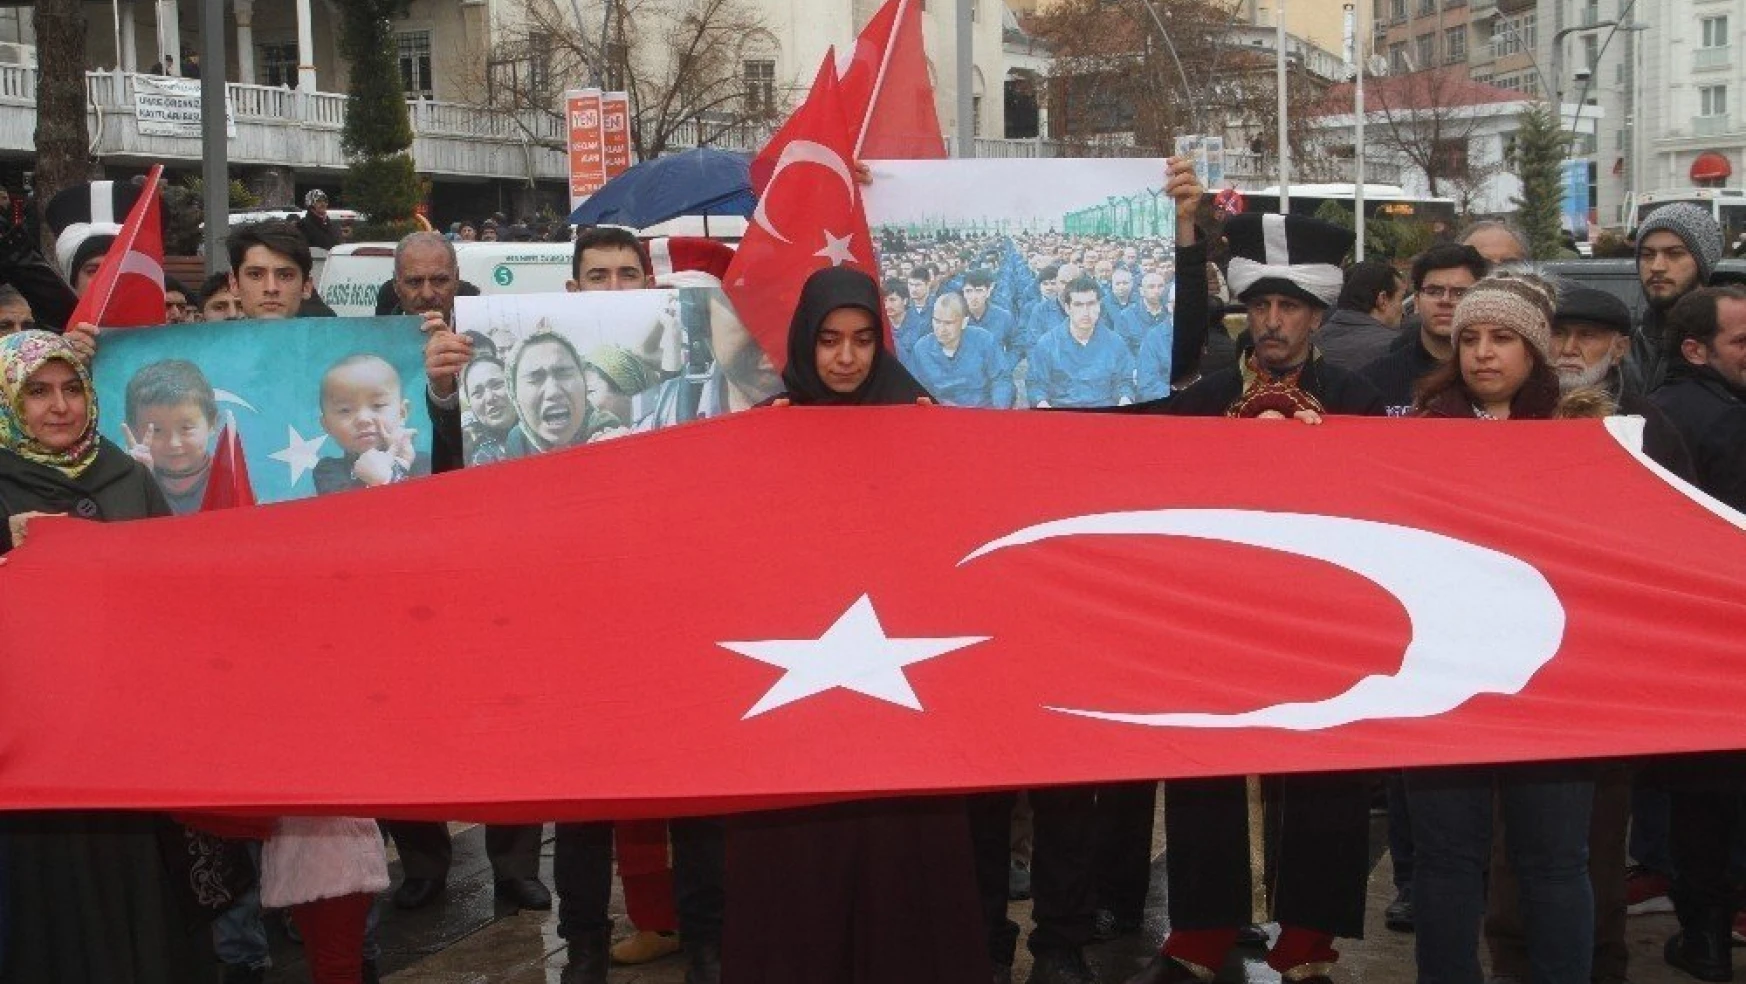 Doğu Türkistan'daki Çin zulmü Elazığ'da protesto edildi